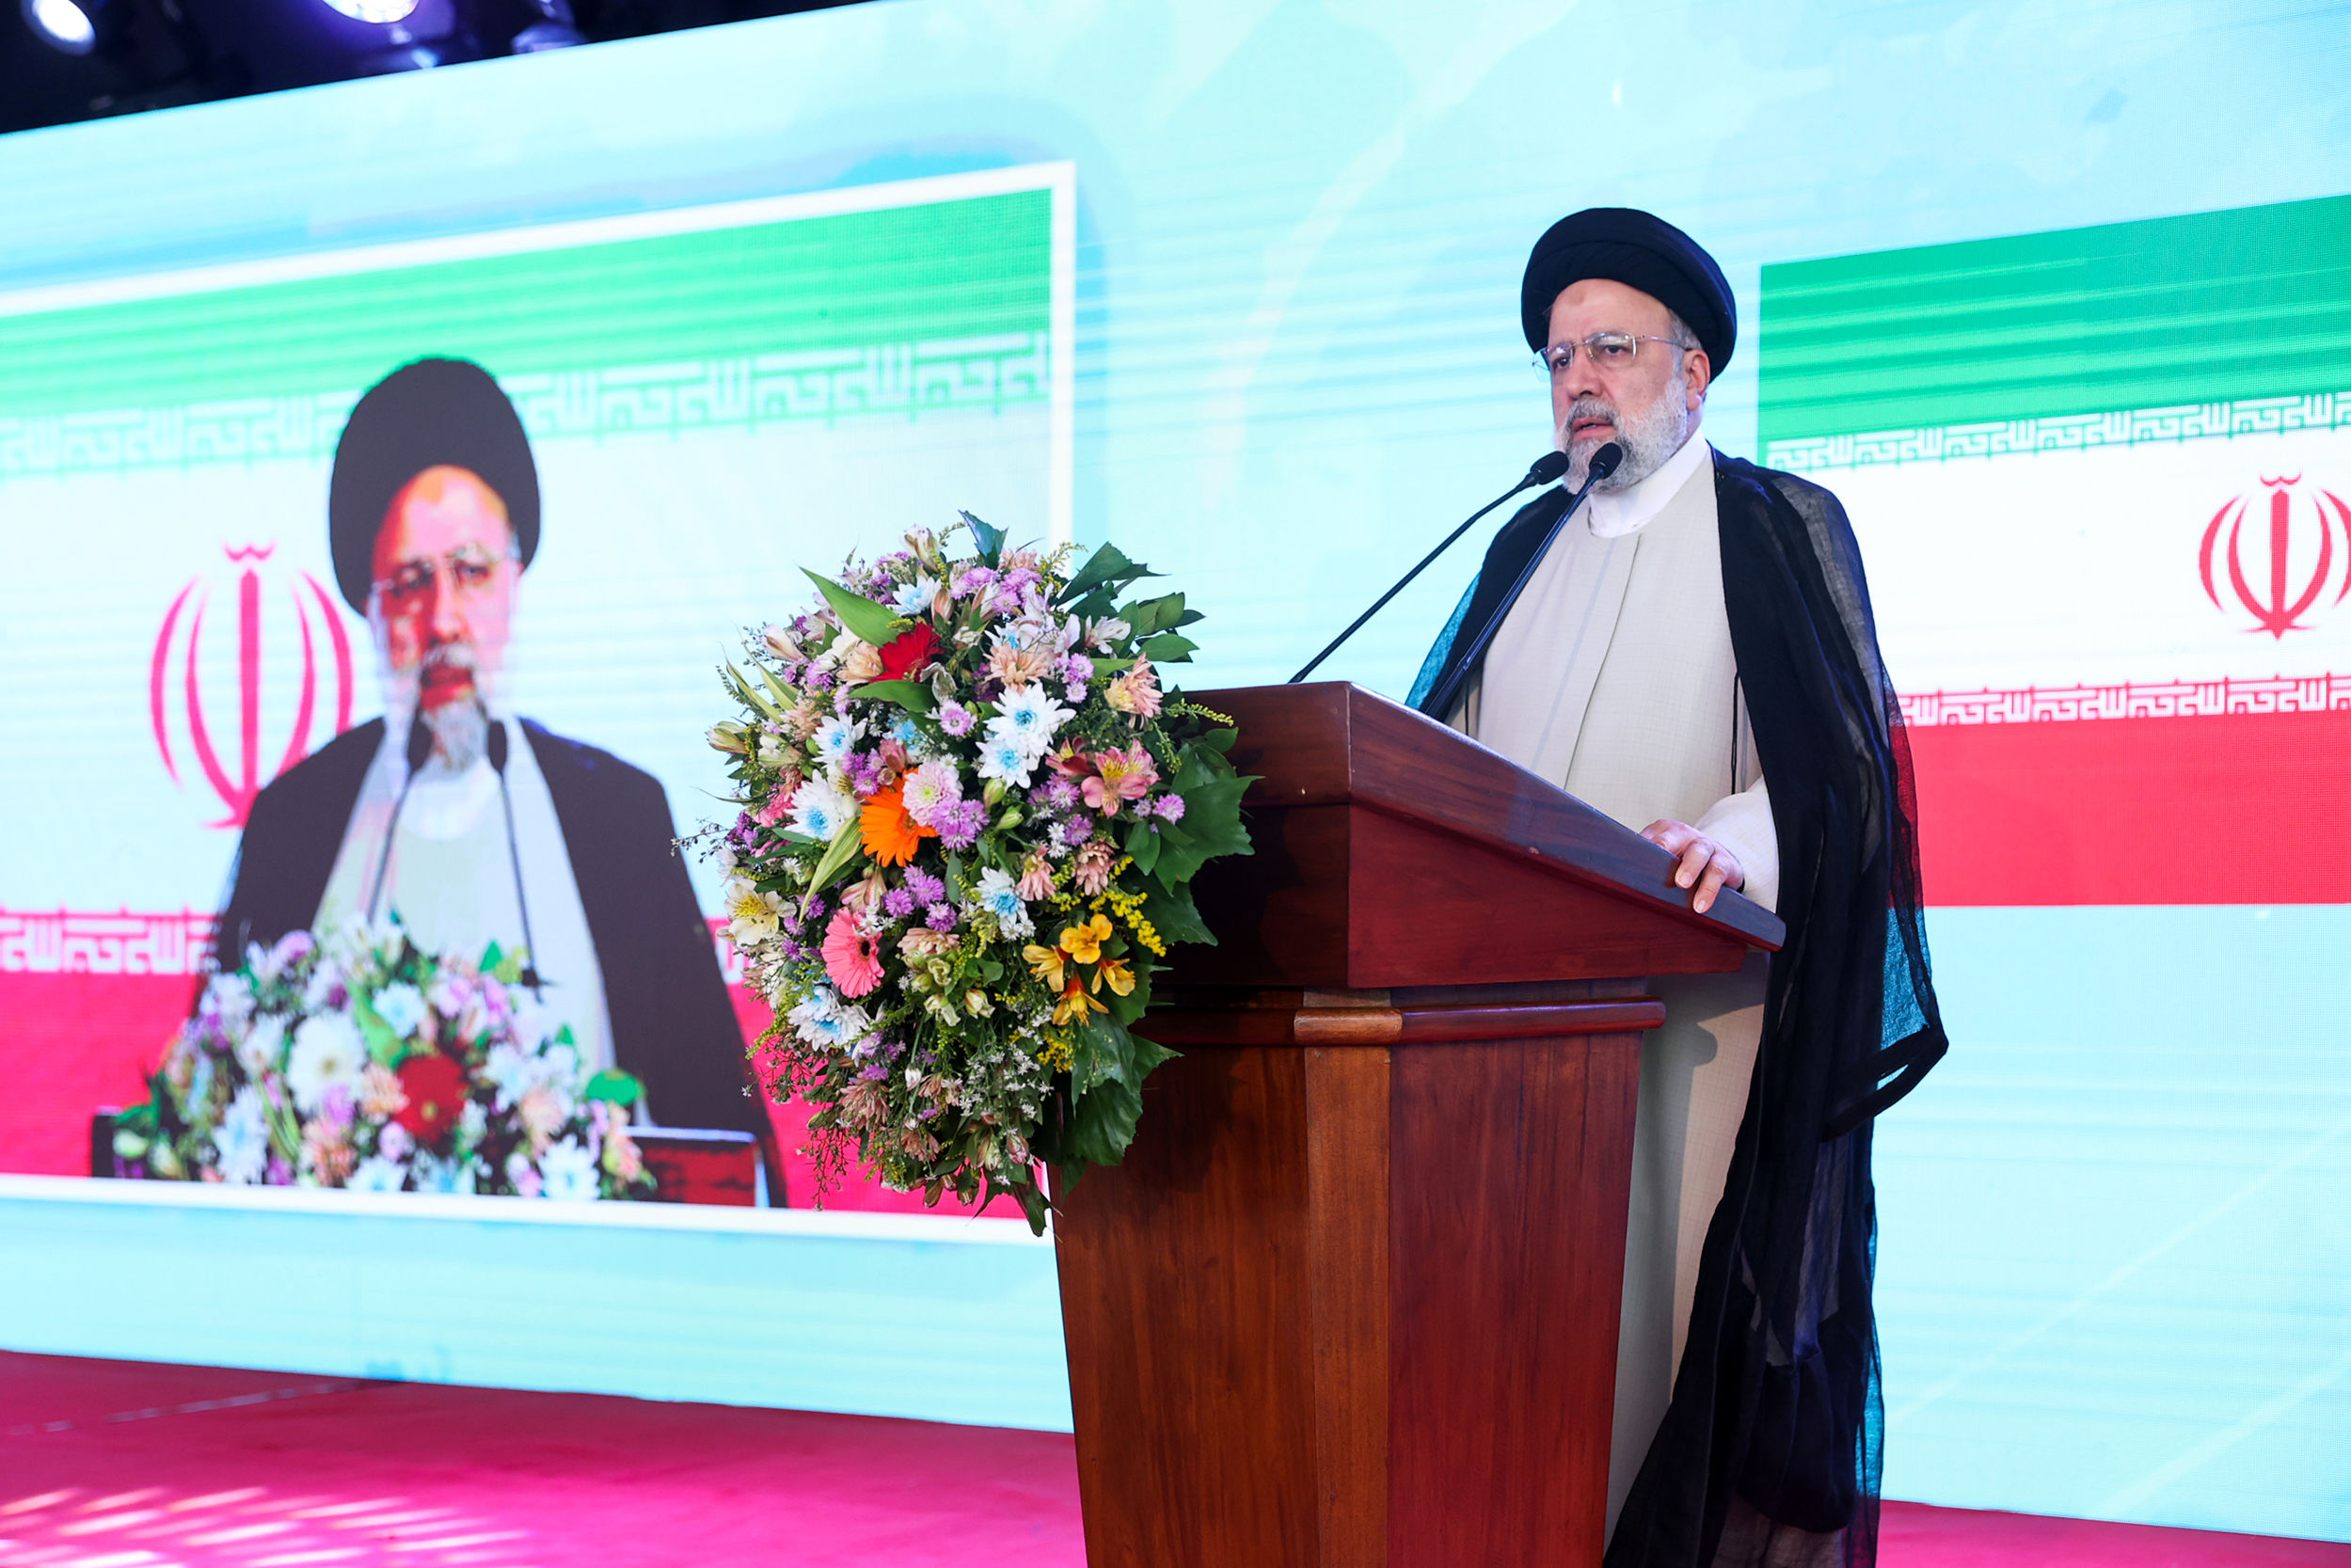 ایران اسلامی با اتکا به توانمندی فنی و مهندسی بومی در حال اجرای طرح های بزرگ در 20 کشور جهان است